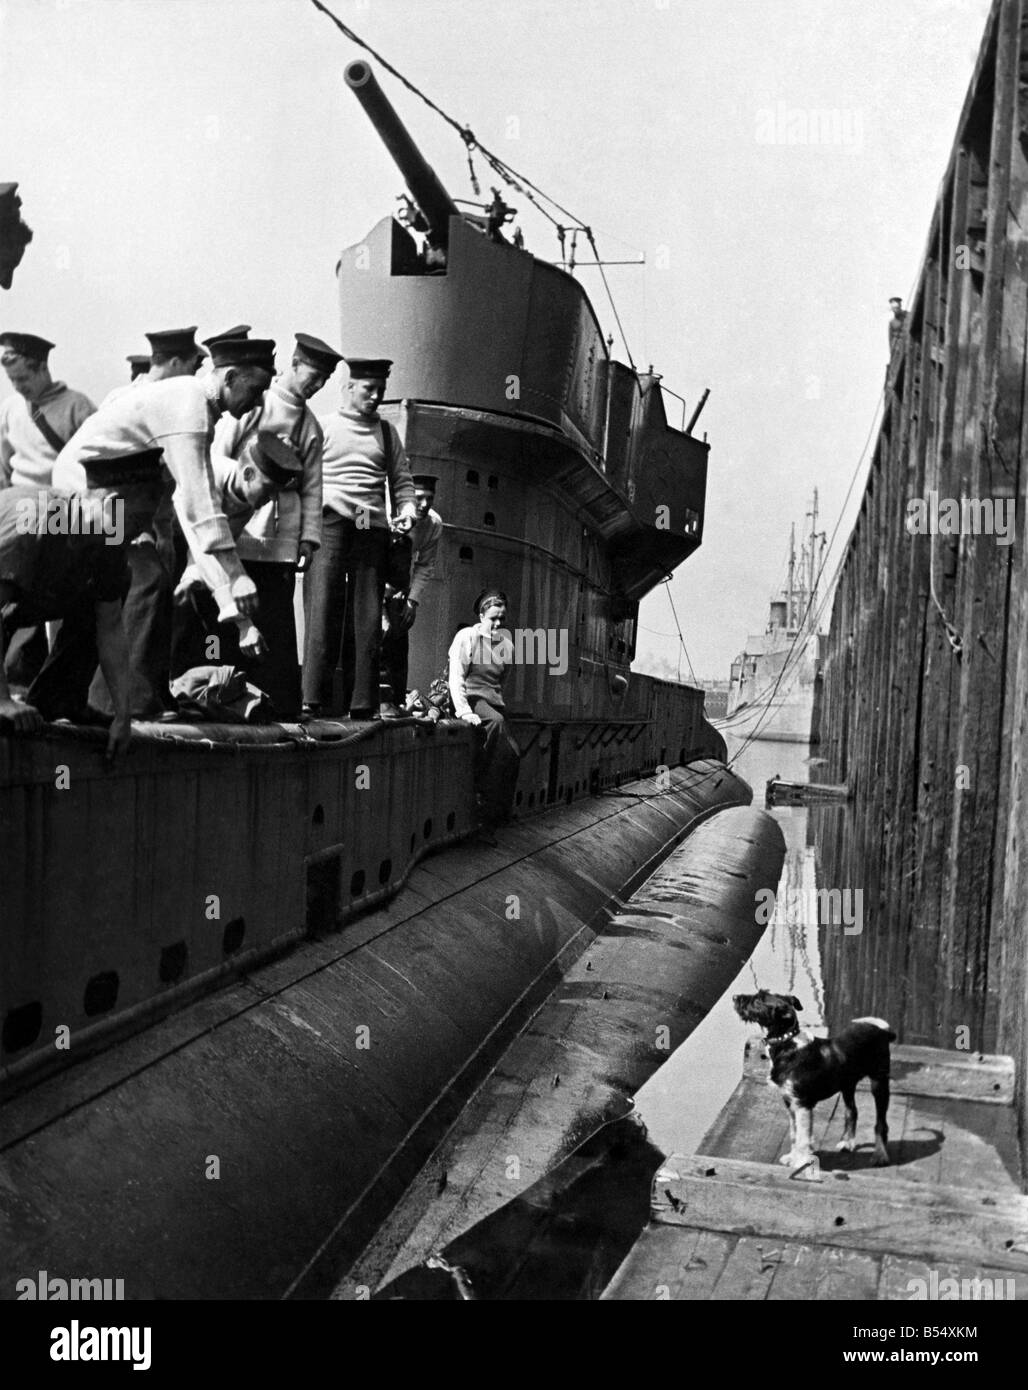 Dem zweiten Weltkrieg Maskottchen. Whisky ein streunender Hund angenommen von der Besatzung eines H.M.S u-Boote, hat über 100 Fahrten mit Crew und d Stockfoto